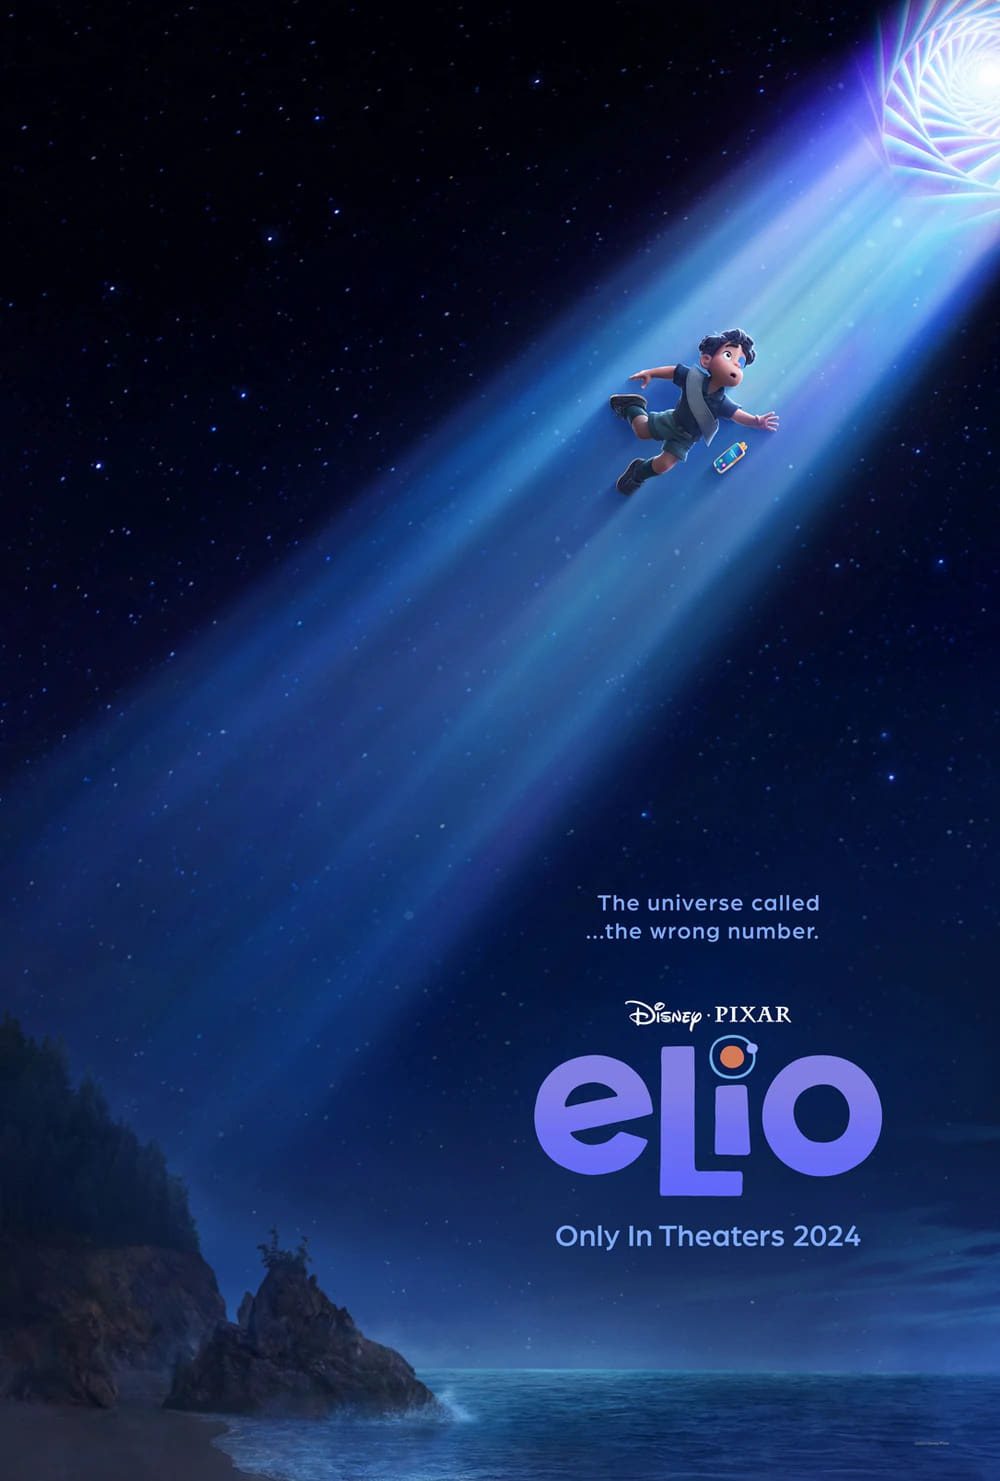 Elio Pixar